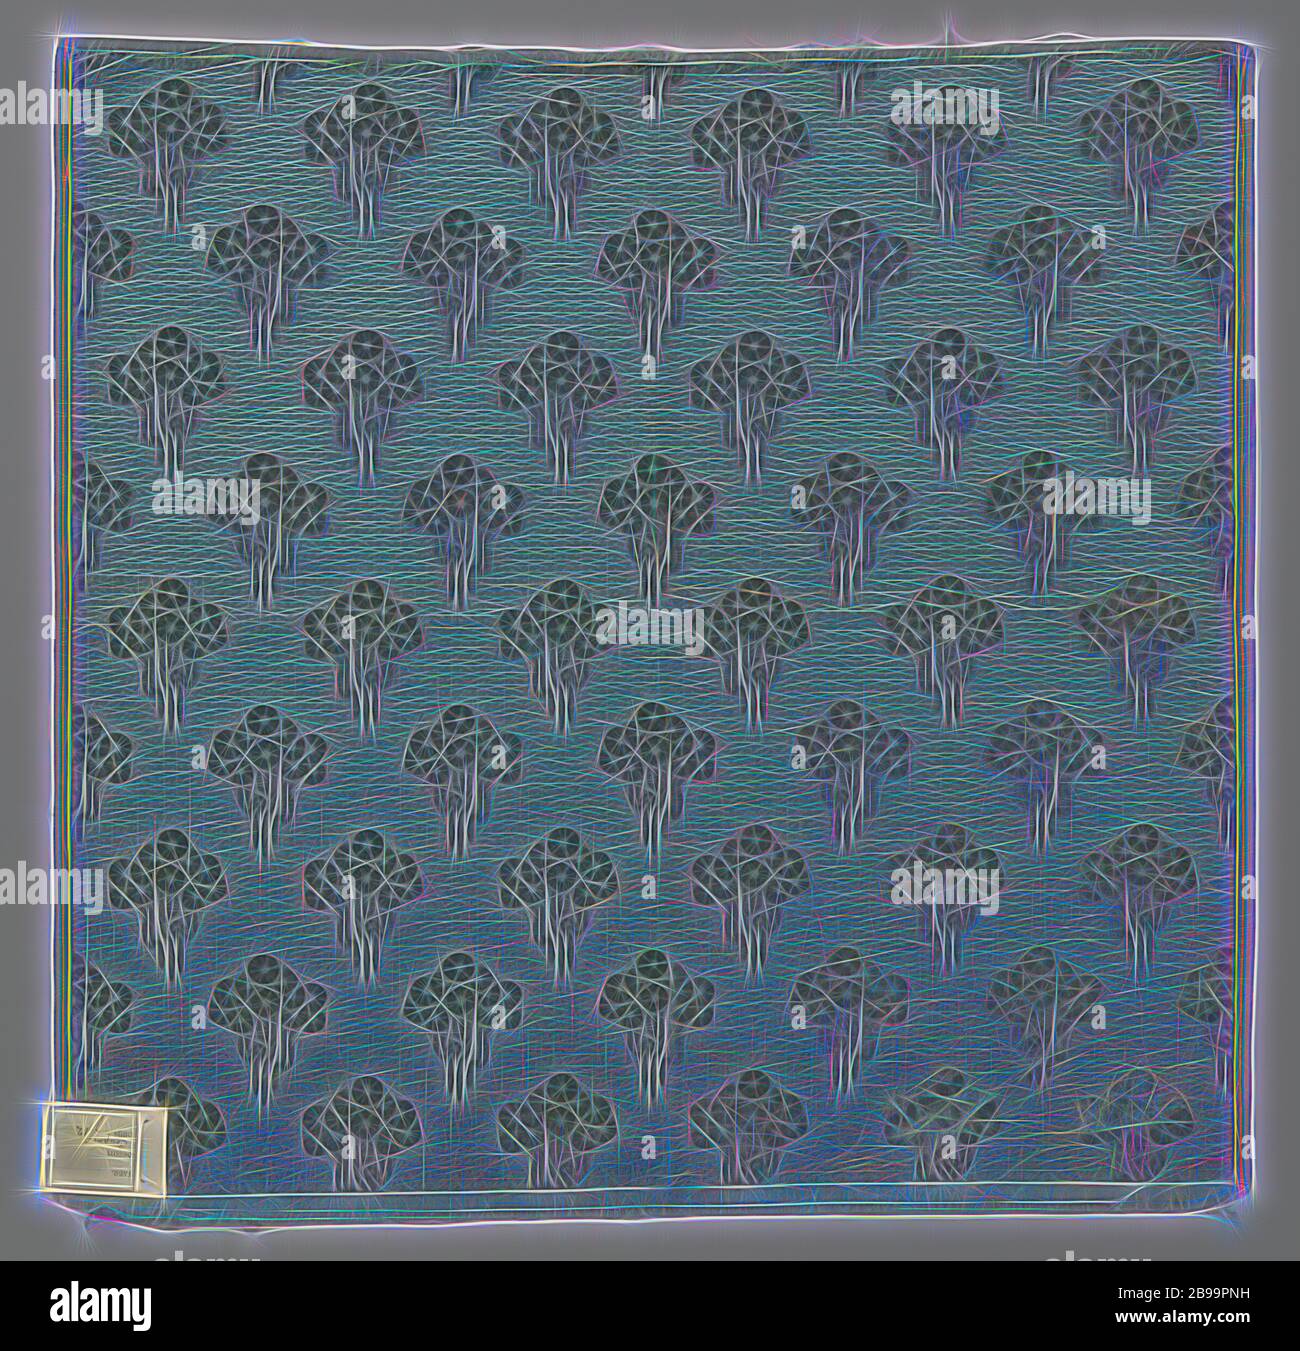 Velours imbriqué et coupé avec tufts fleuris stylisés, en vert clair-bleu, tissus de velours à noped et coupé, avec tufts fleuris stylisés, en vert clair-bleu., Firma H.P. Mutters, la Haye, c. 1920 - c. 1930, soie, velours (tissu tissé), h 63.0 cm × l 61.0 cm, repensé par Gibon, design chaleureux et gai lumineux de la luminosité et des rayons de lumière radiance. L'art classique réinventé avec une touche moderne. Photographie inspirée par le futurisme, embrassant l'énergie dynamique de la technologie moderne, le mouvement, la vitesse et révolutionnez la culture. Banque D'Images